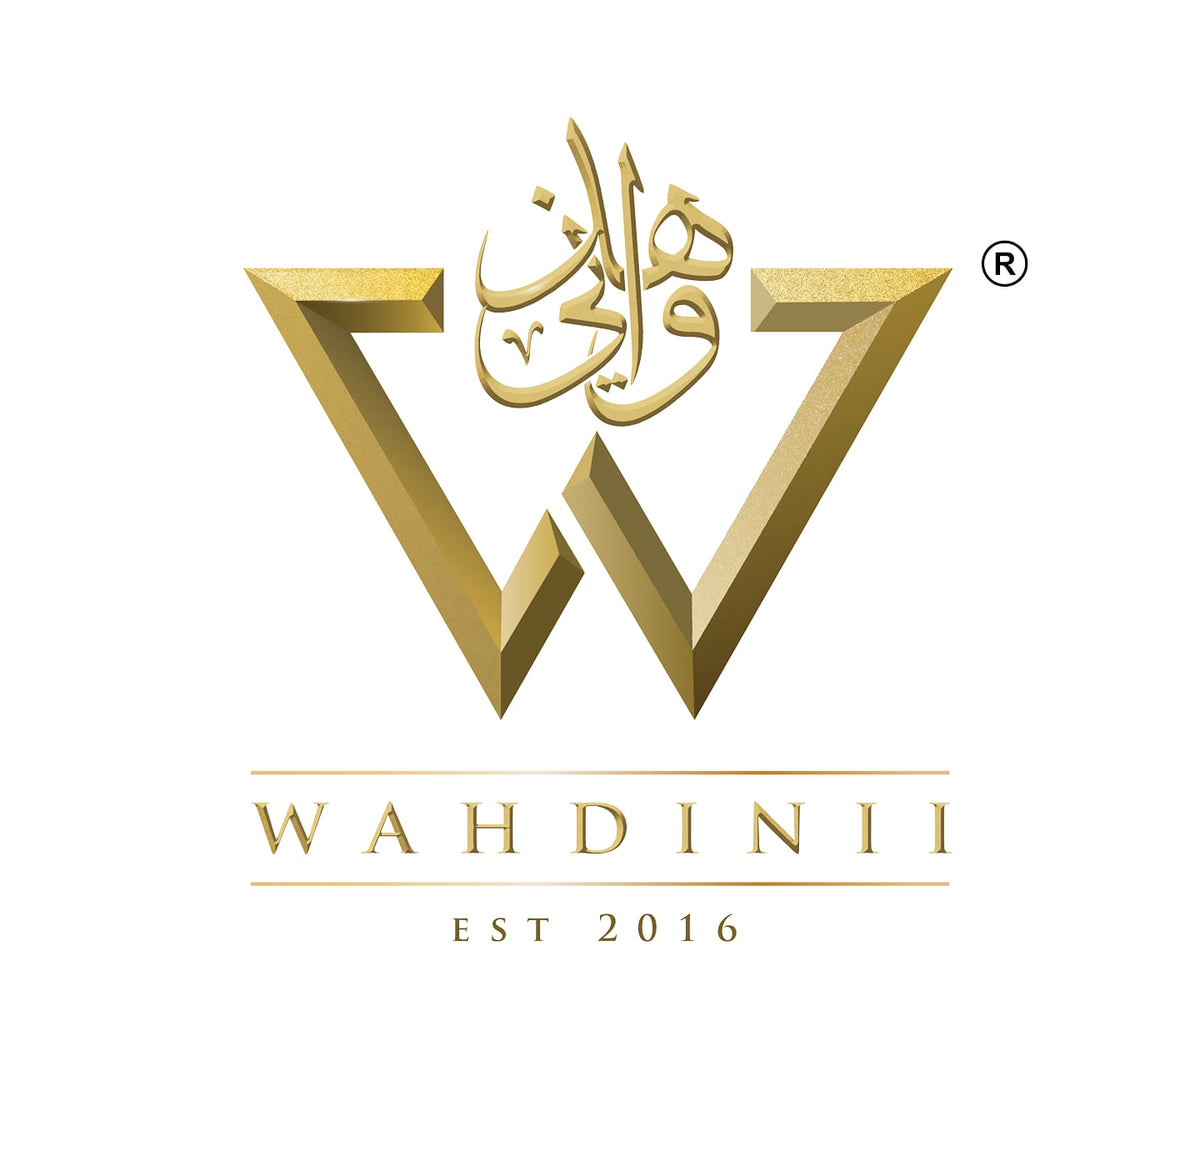 Wahdinii